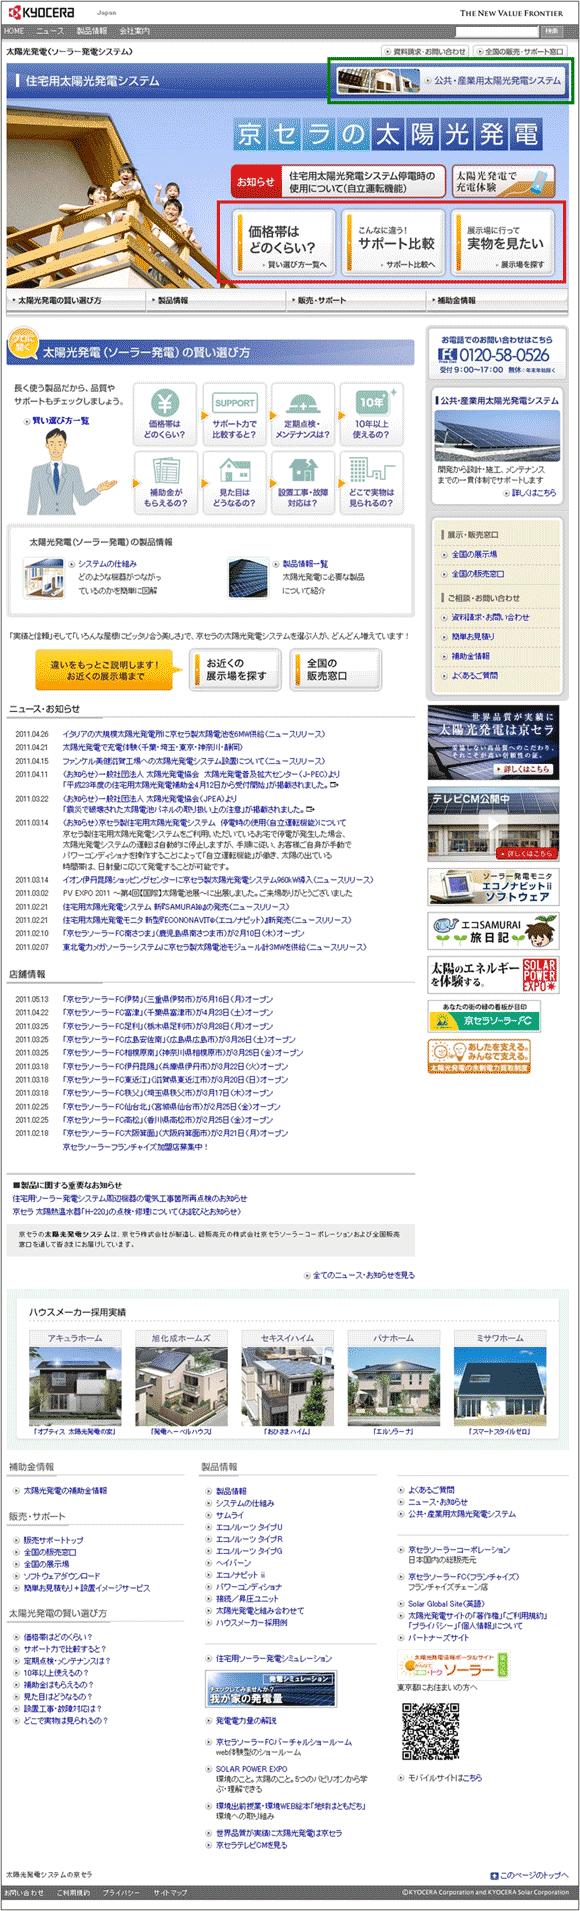 図1：京セラの住宅用太陽光発電システムのサイト